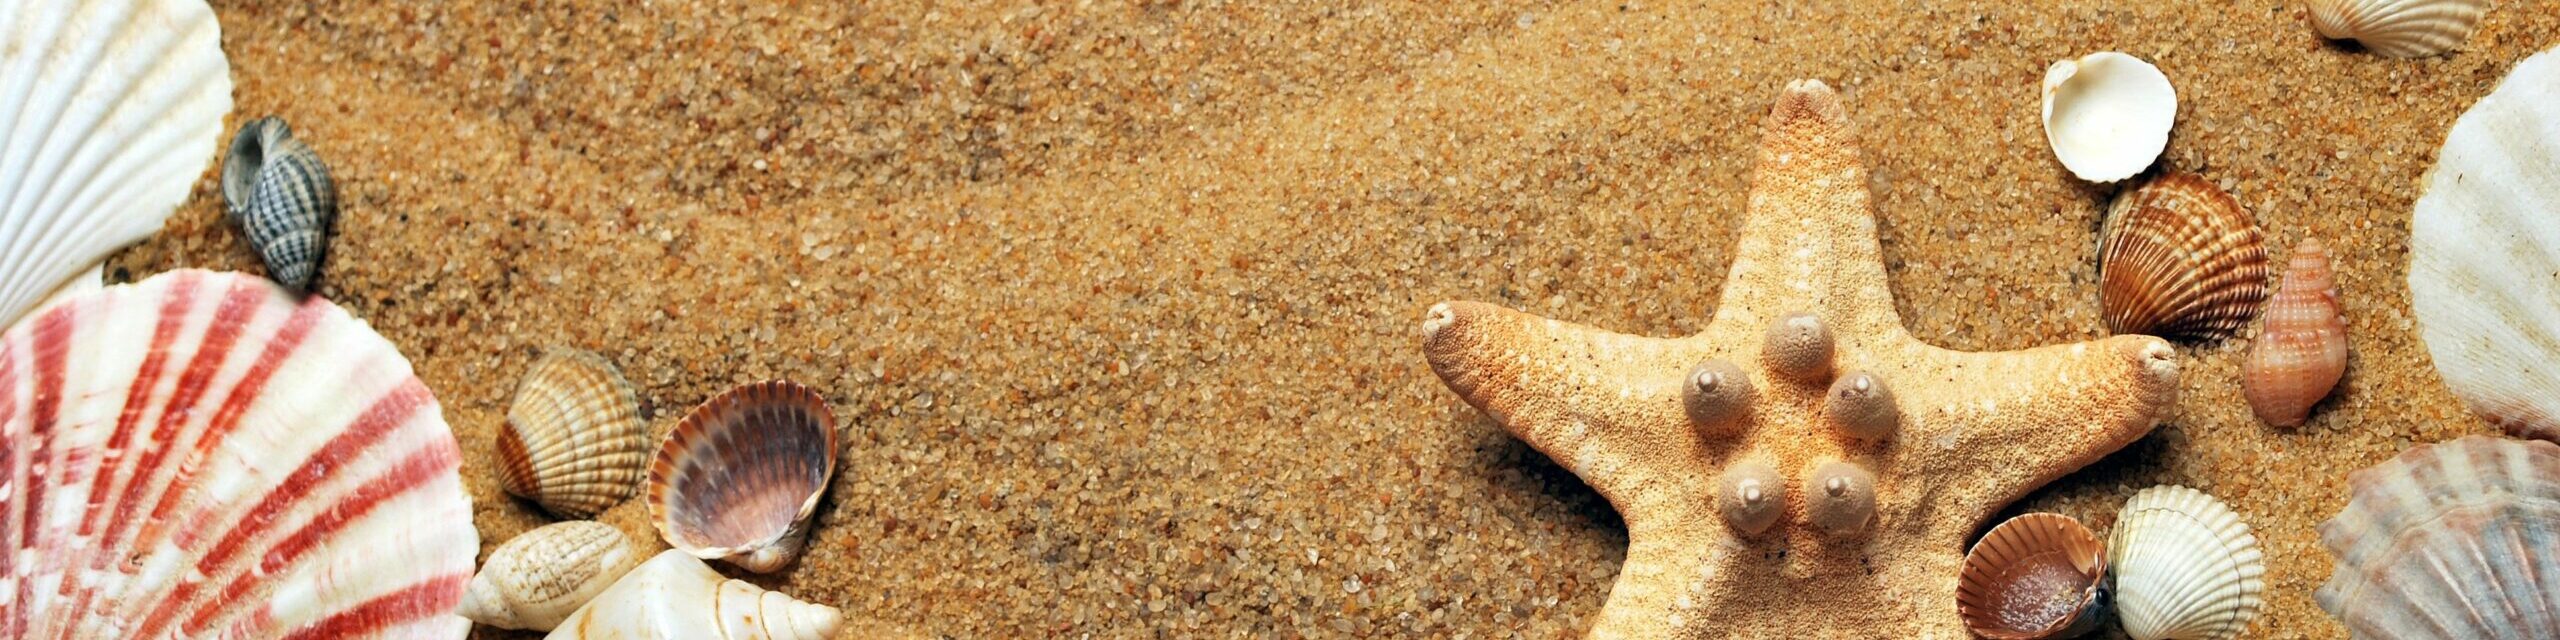 Musscheln am Strand